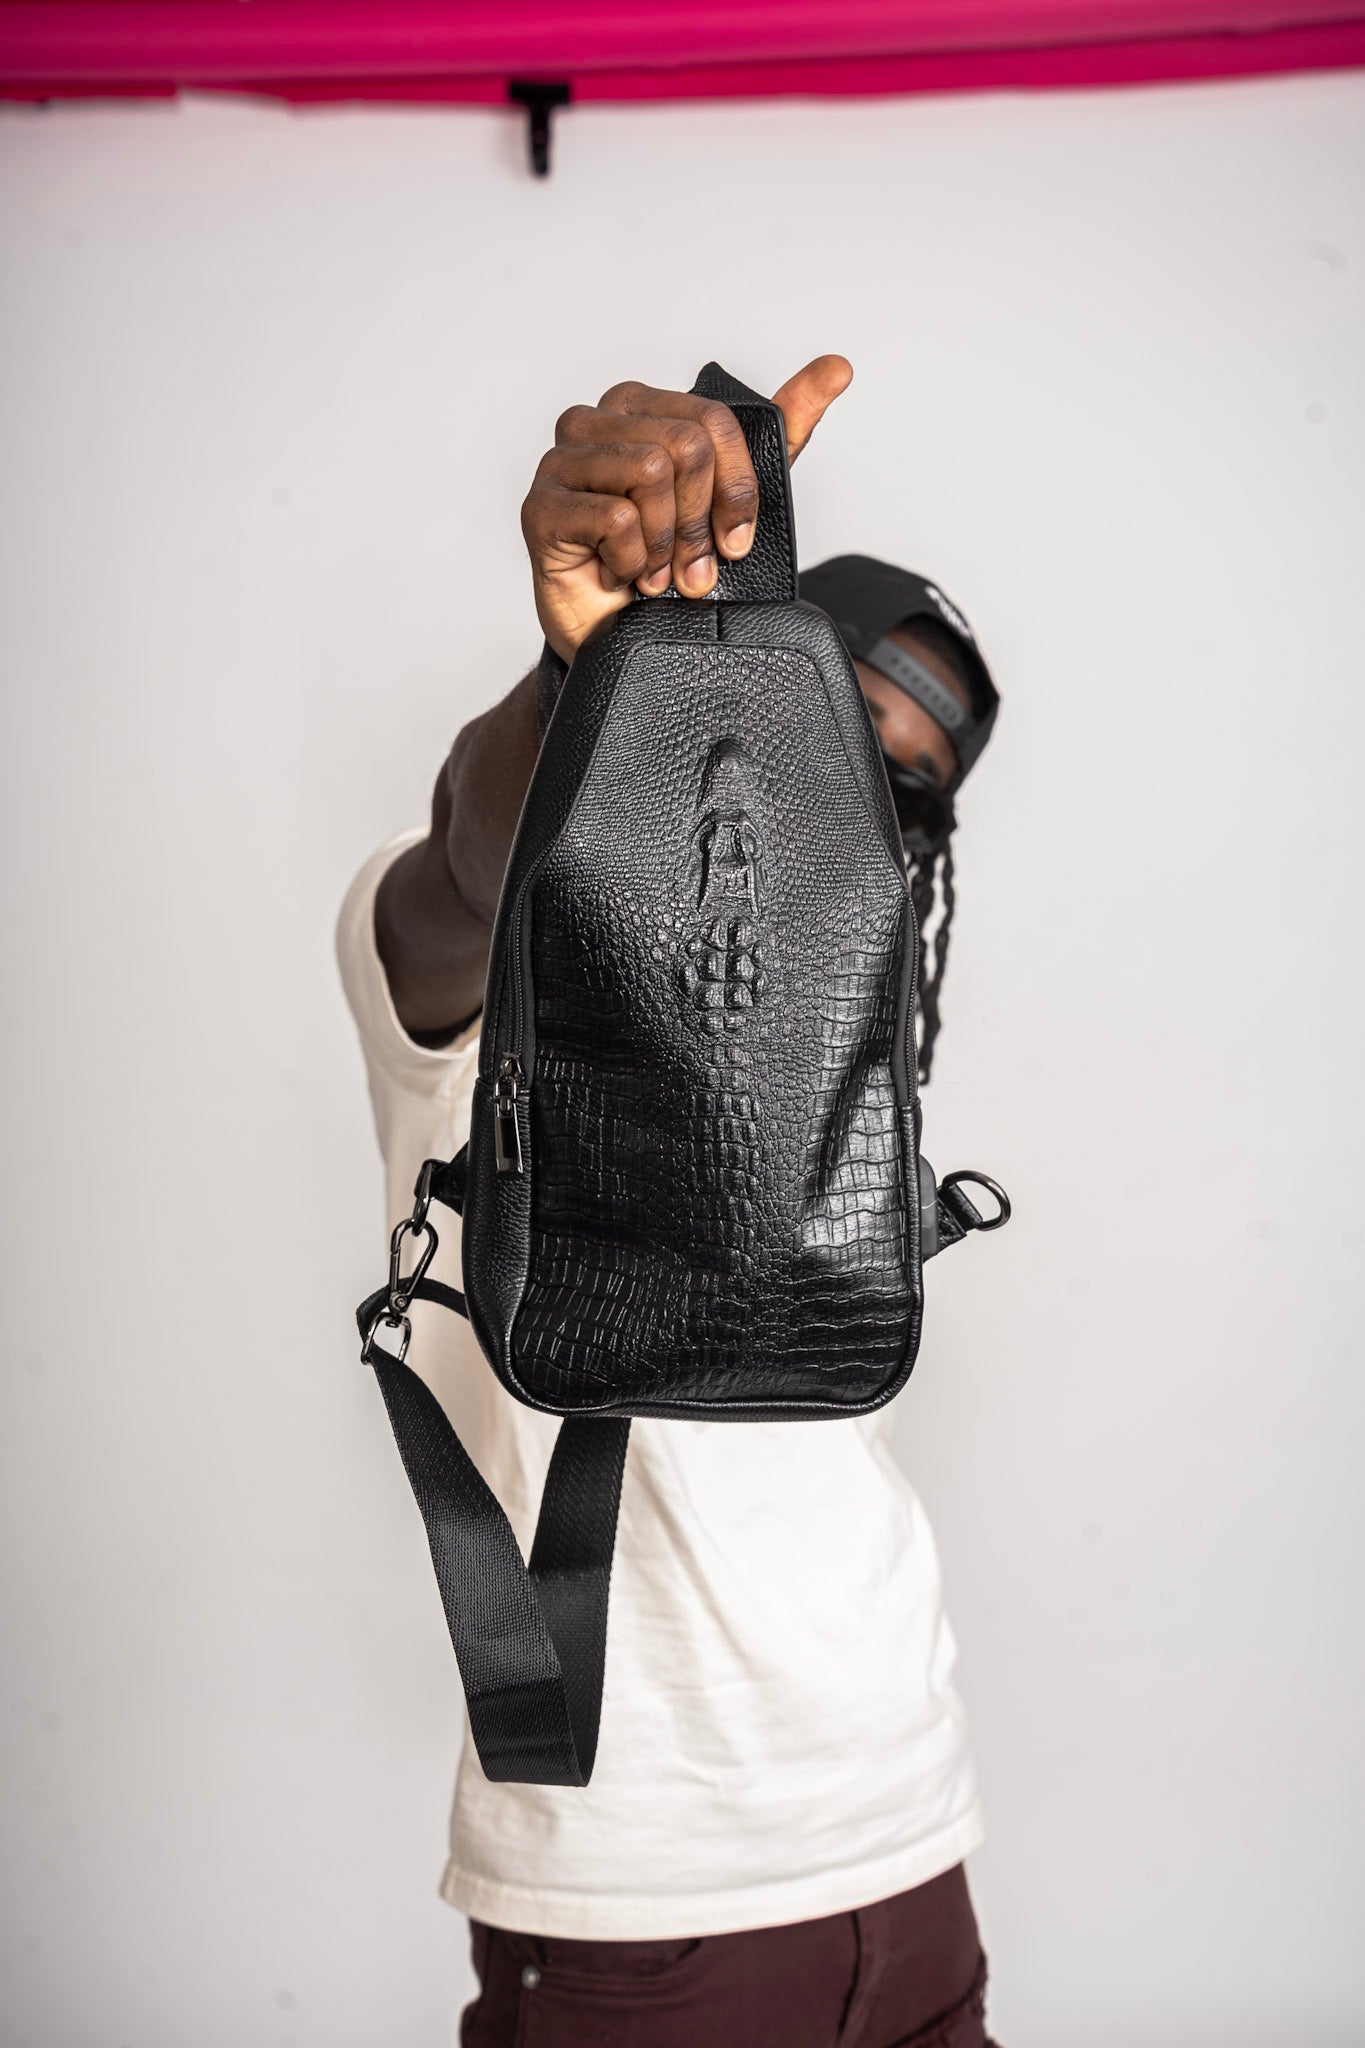 Croc Money Bag  (sling bag)